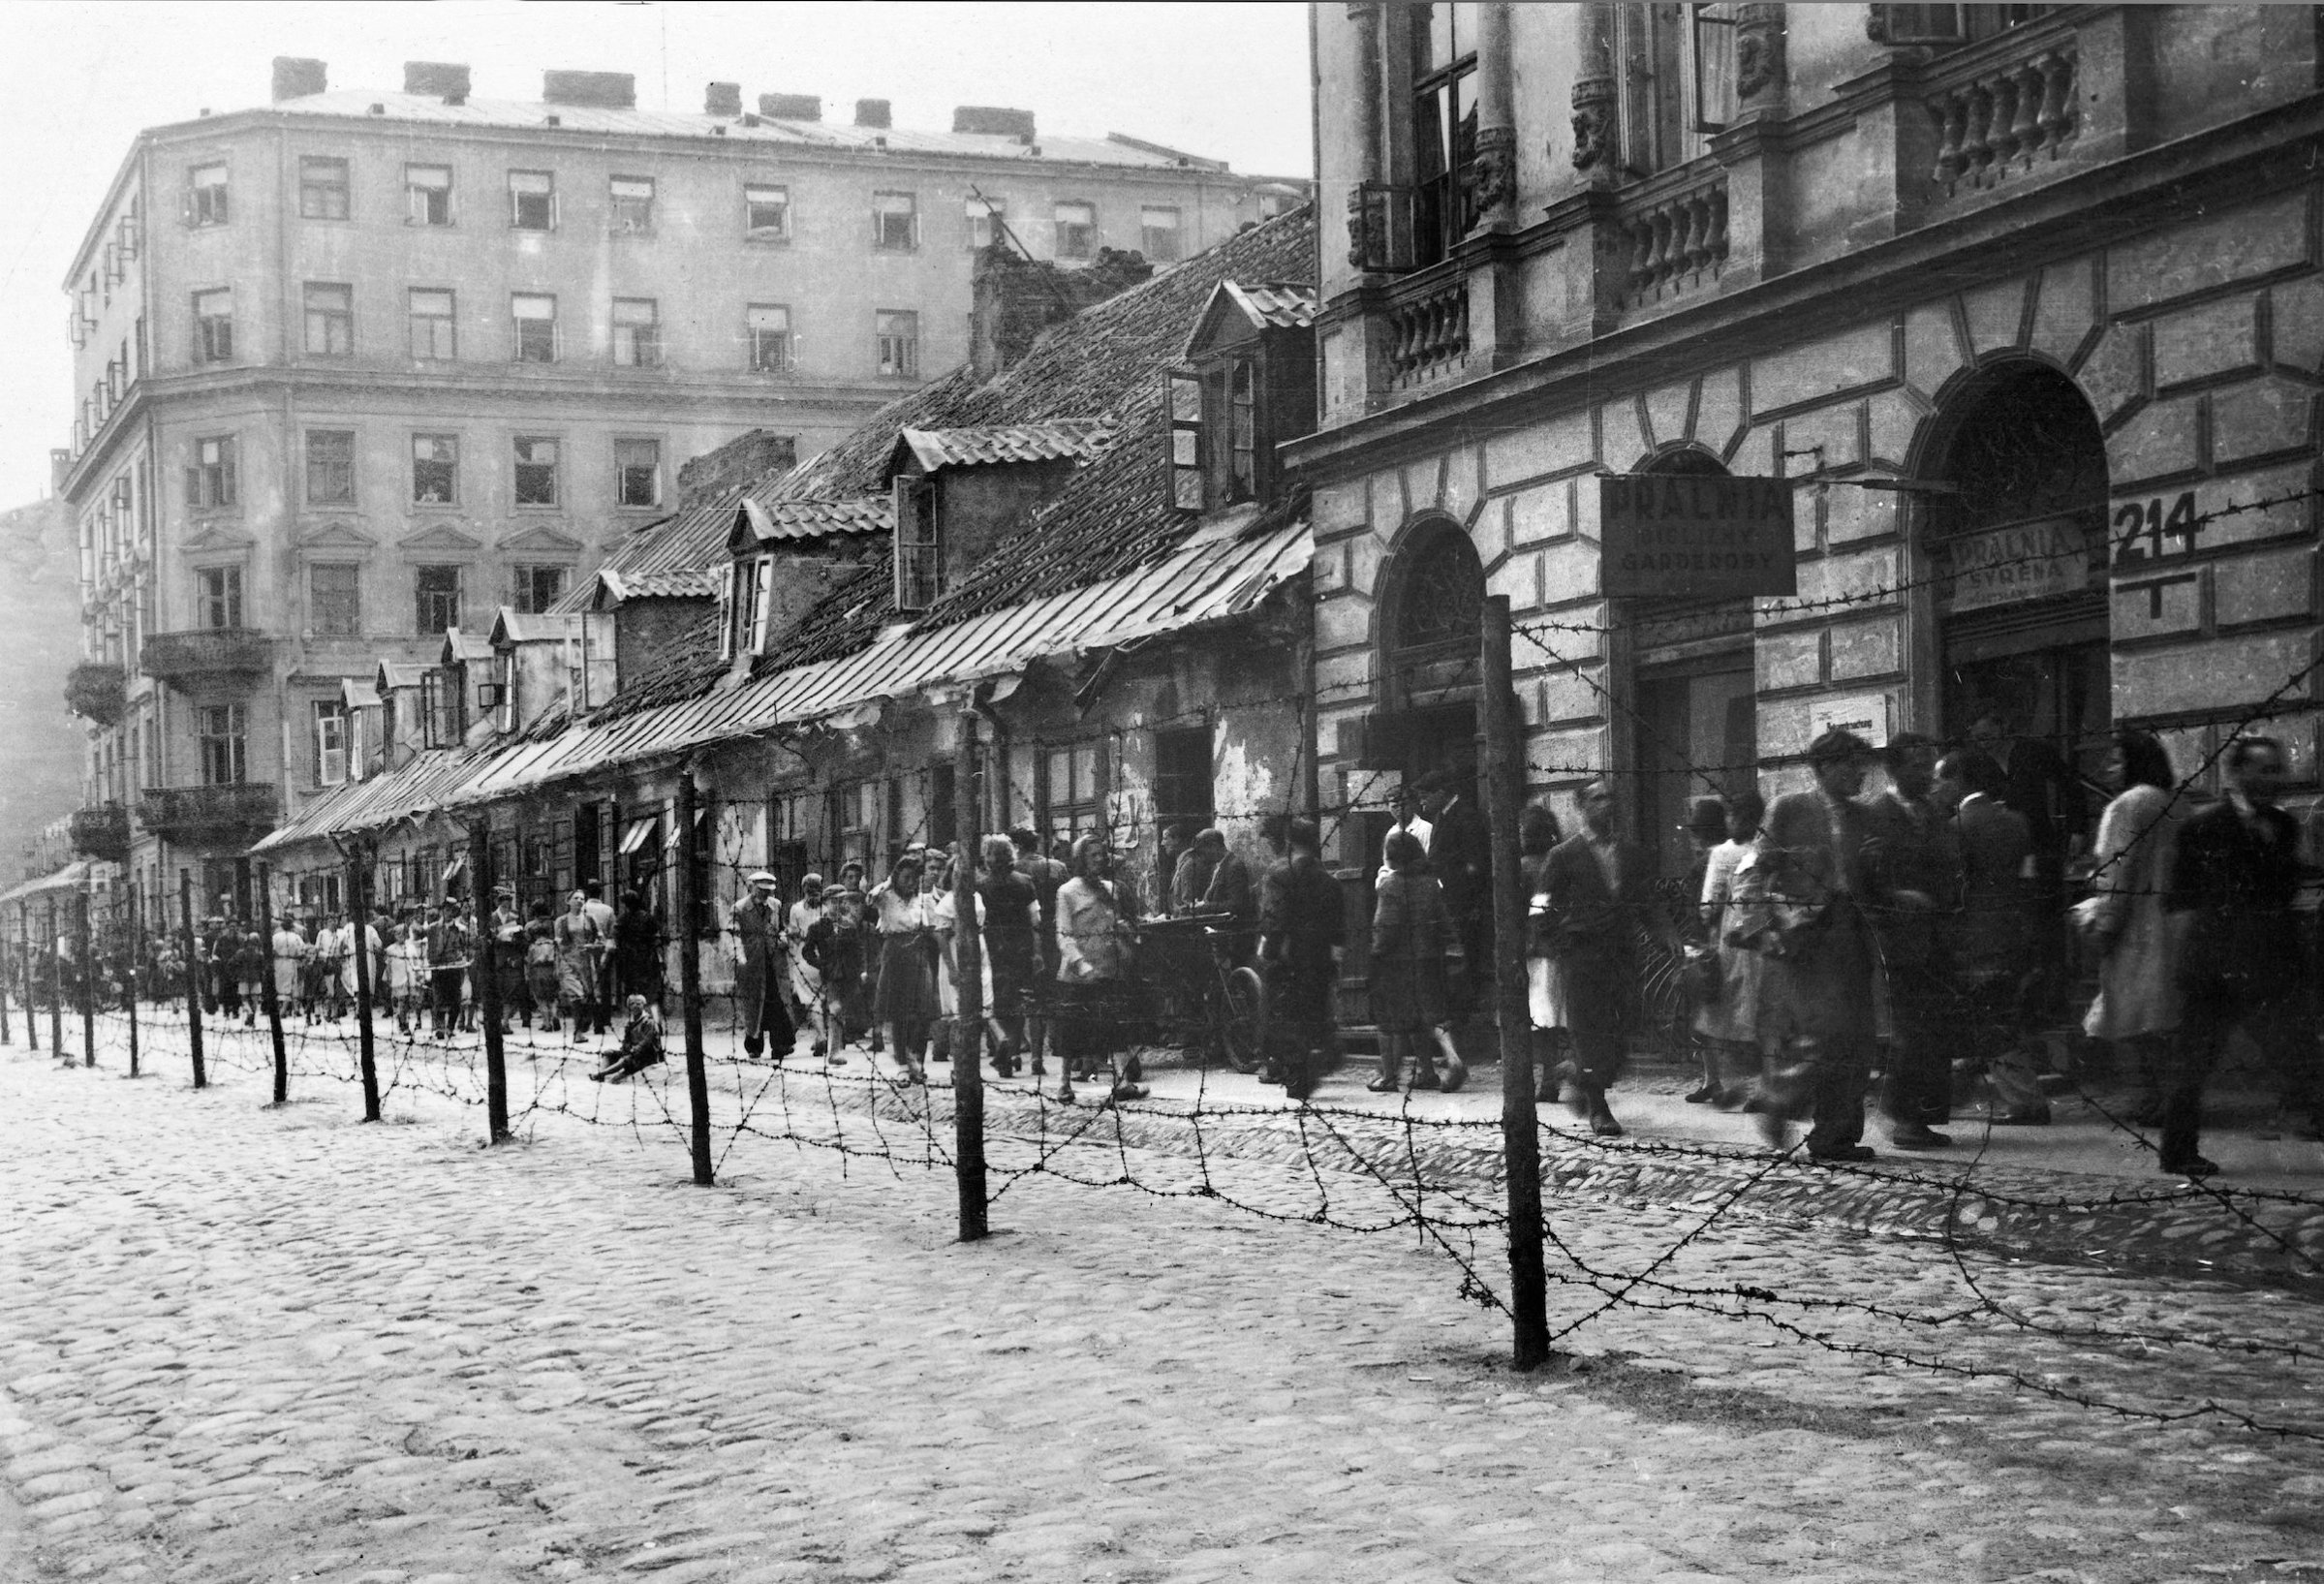 Warsaw Ghetto 1940-1943